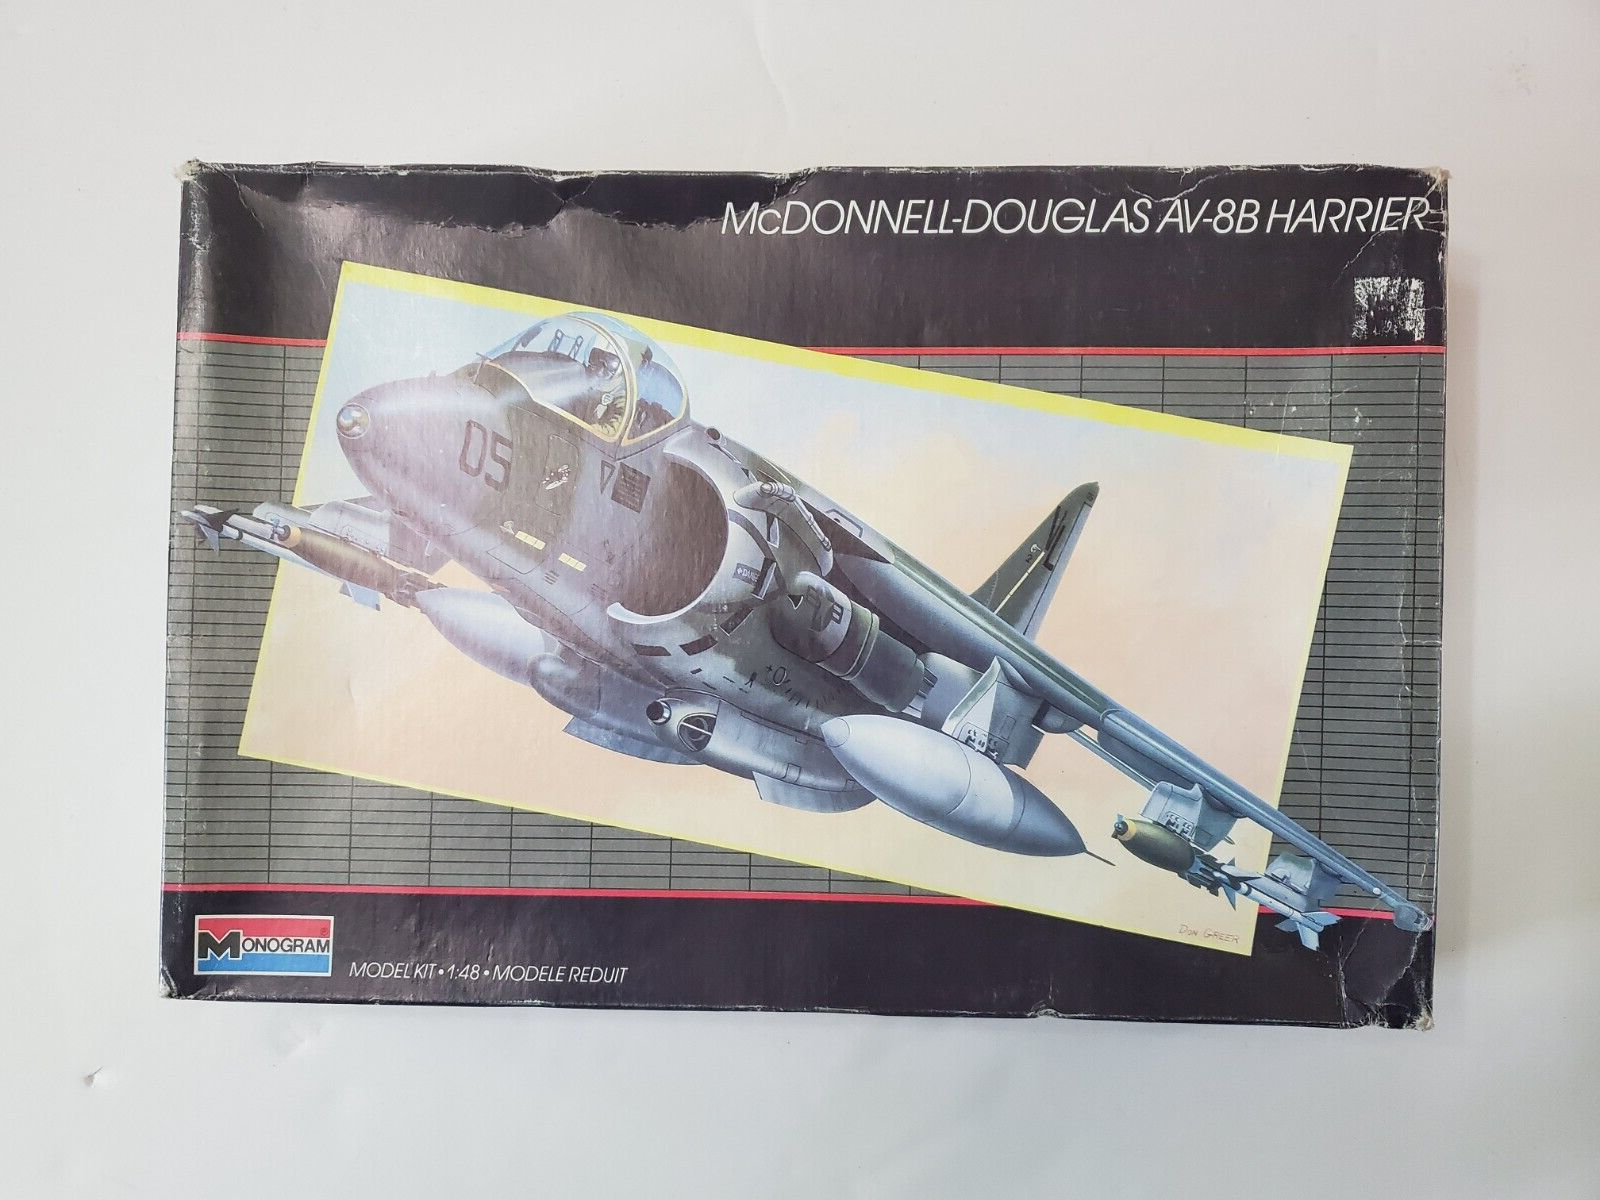 Vintage 1987 Monogram McDonnell-Douglas AV-8B Harrier 1/48 Scale Model Kit #5448 - $20.00